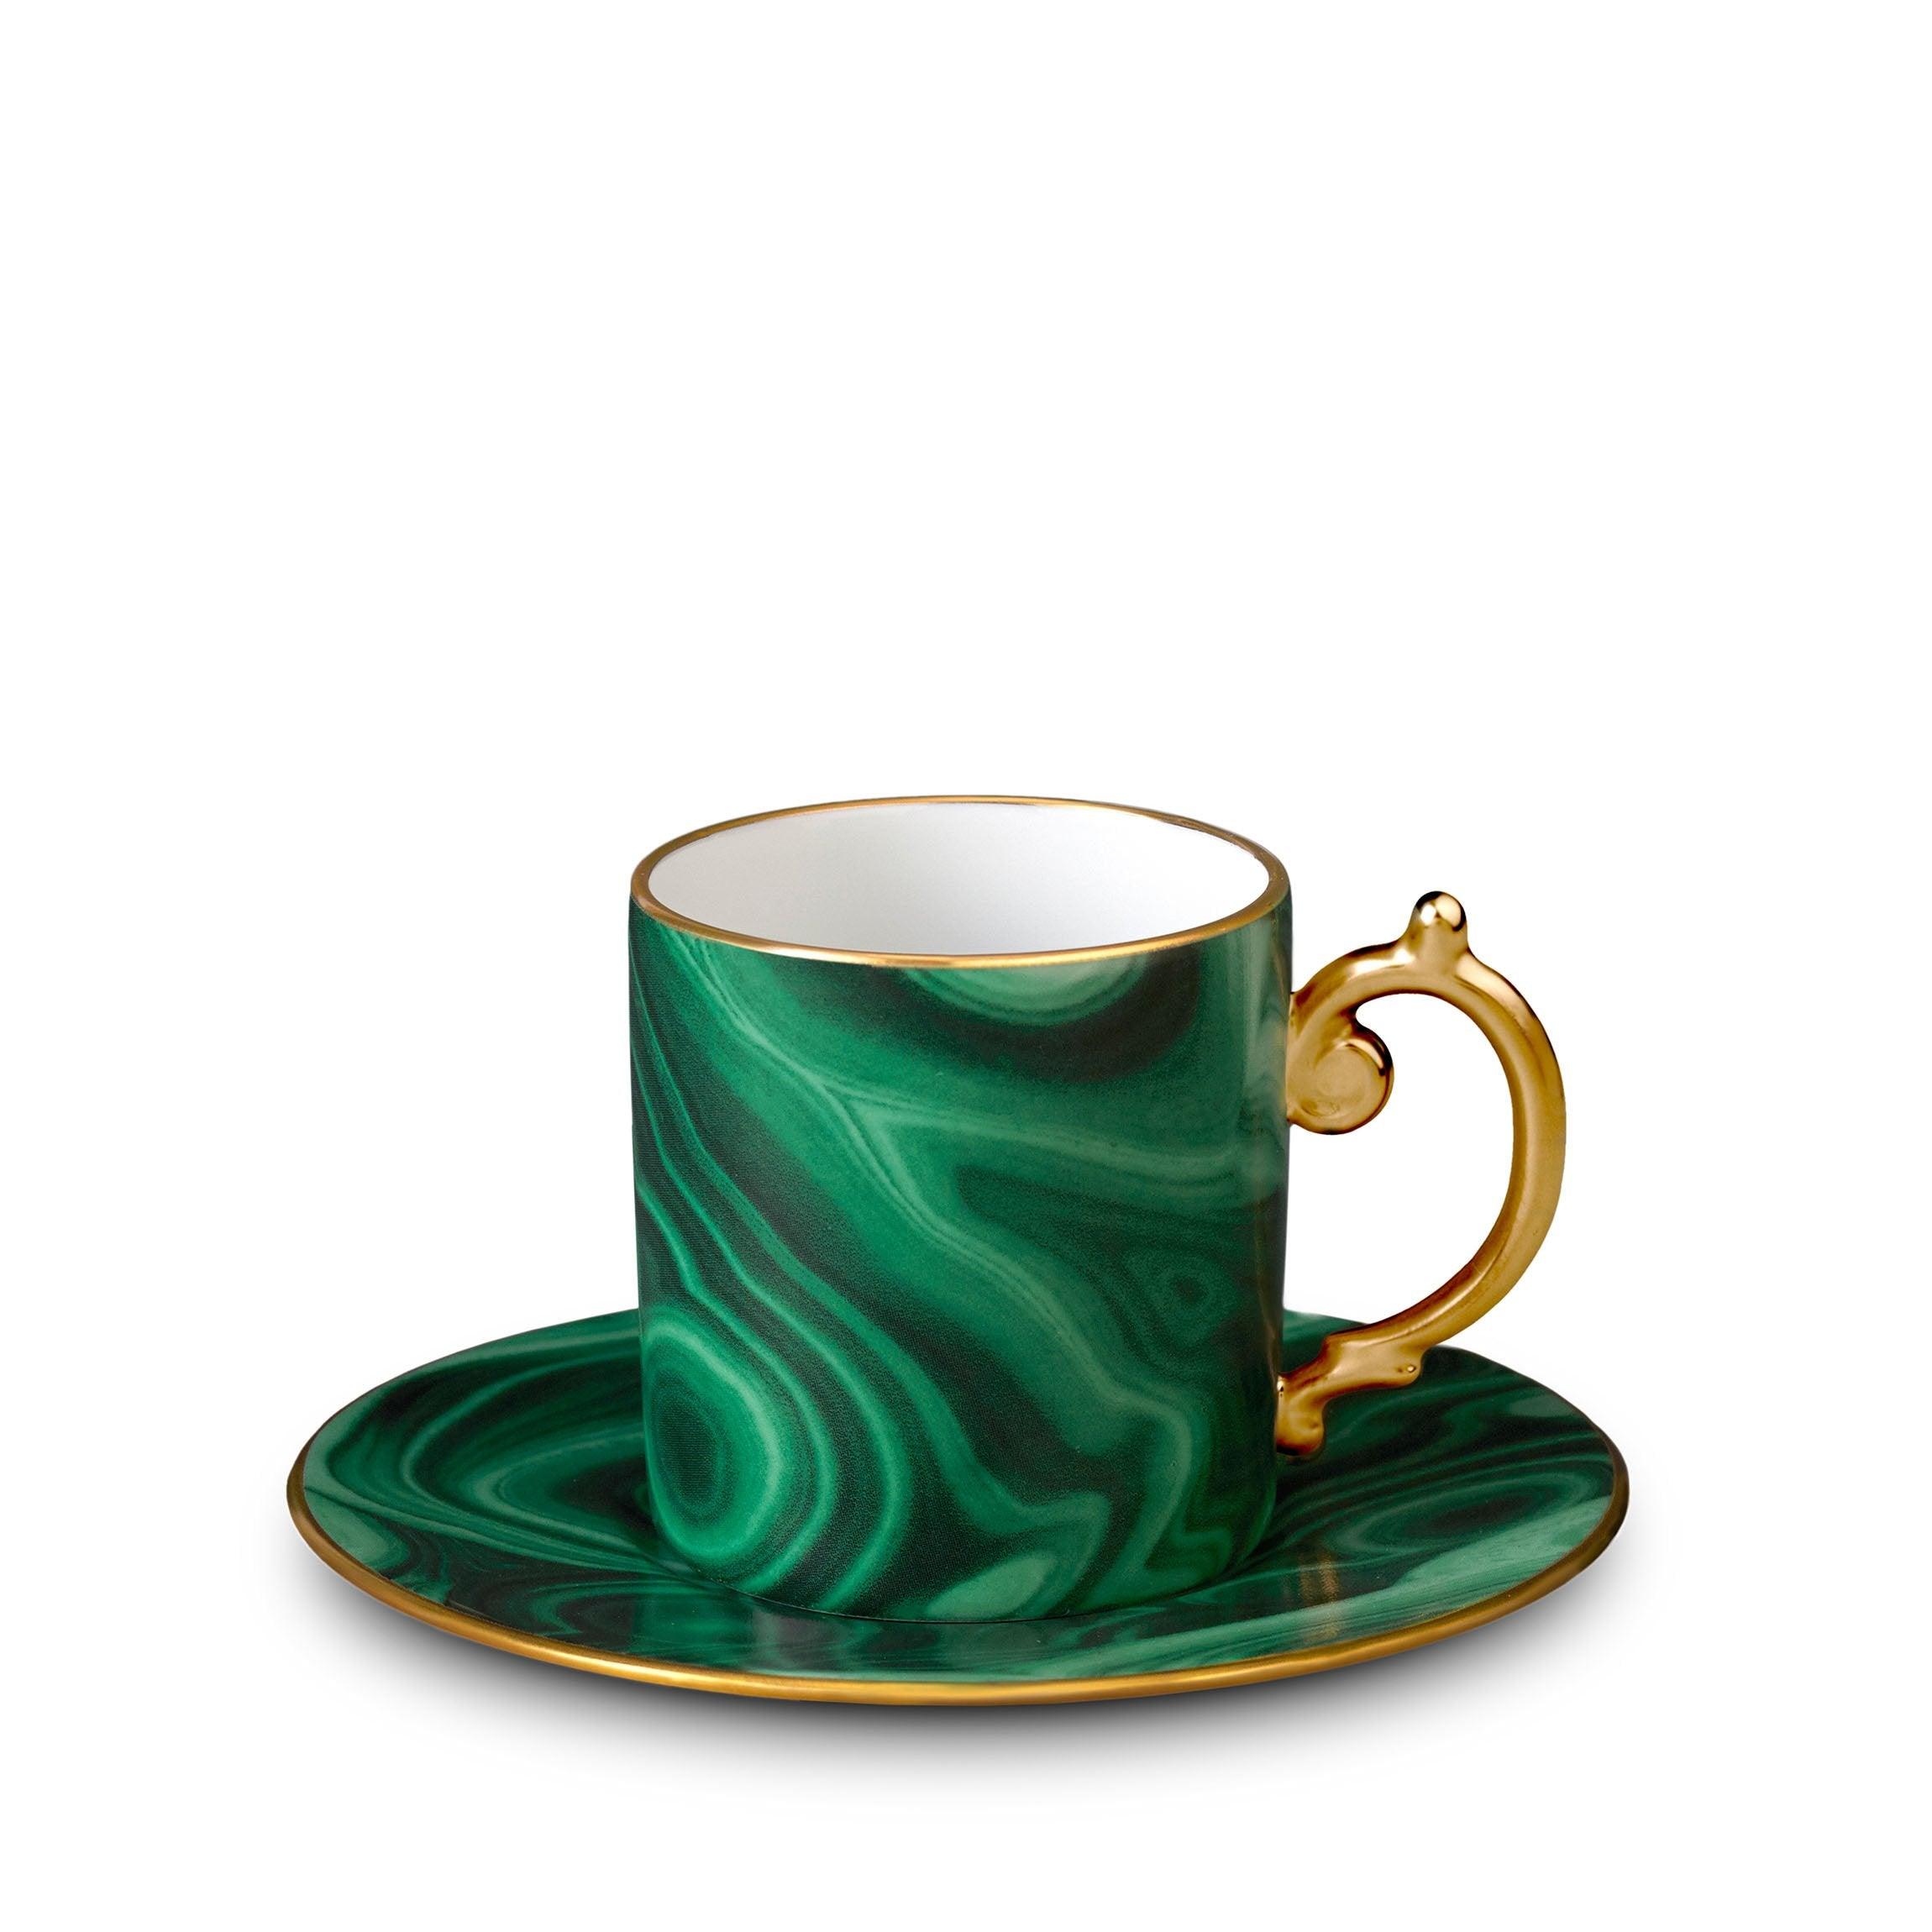 http://www.l-objet.com/cdn/shop/files/malachite-espresso-cup-saucer-l-objet-1.jpg?v=1692012869